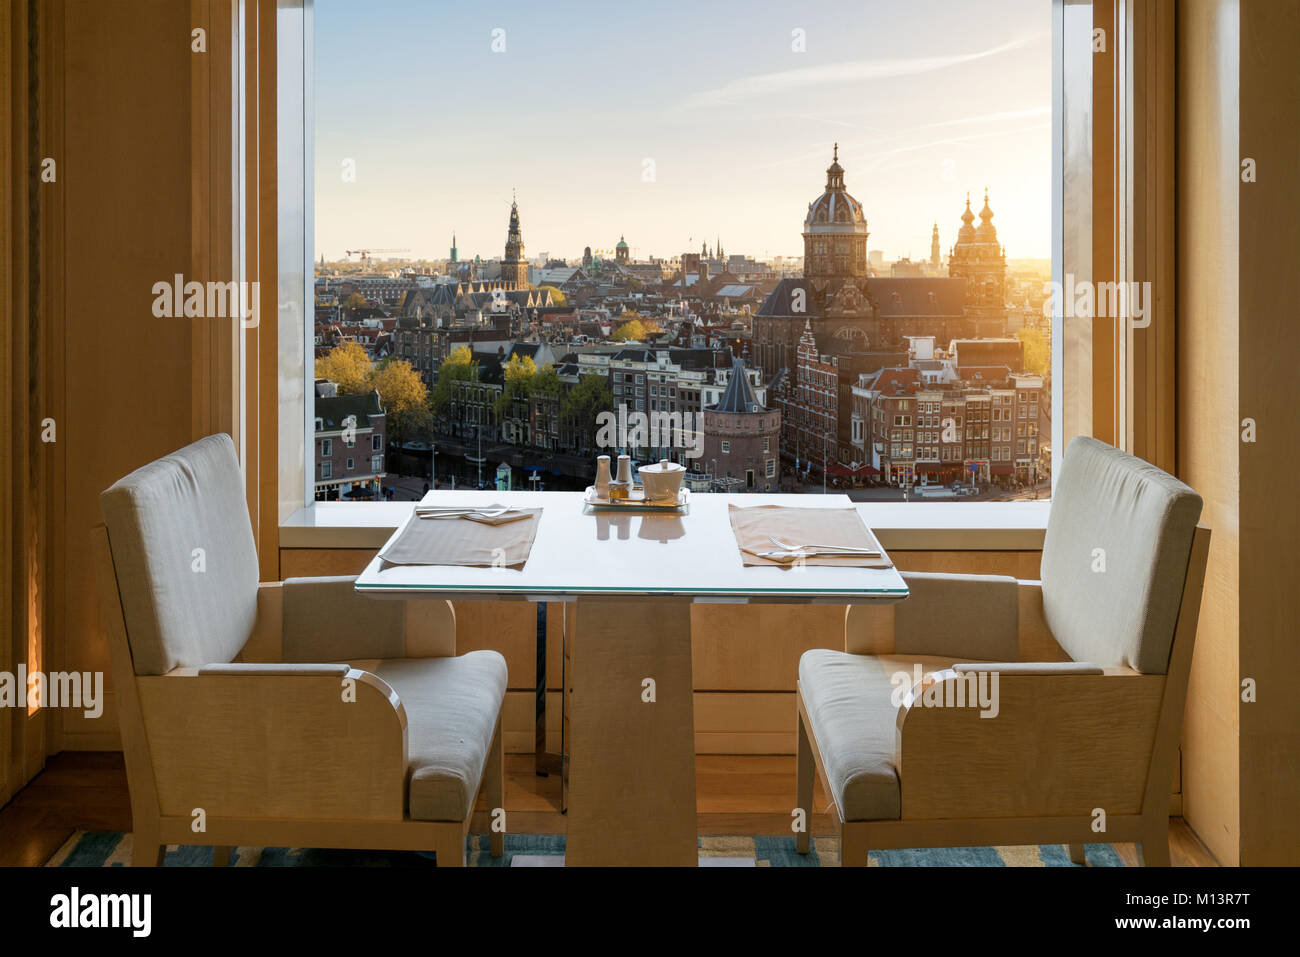 Moderner Luxus Restaurant Innenraum mit romantischen Sinn Blick auf die Altstadt von Amsterdam in Amsterdam, Niederlande. Stockfoto